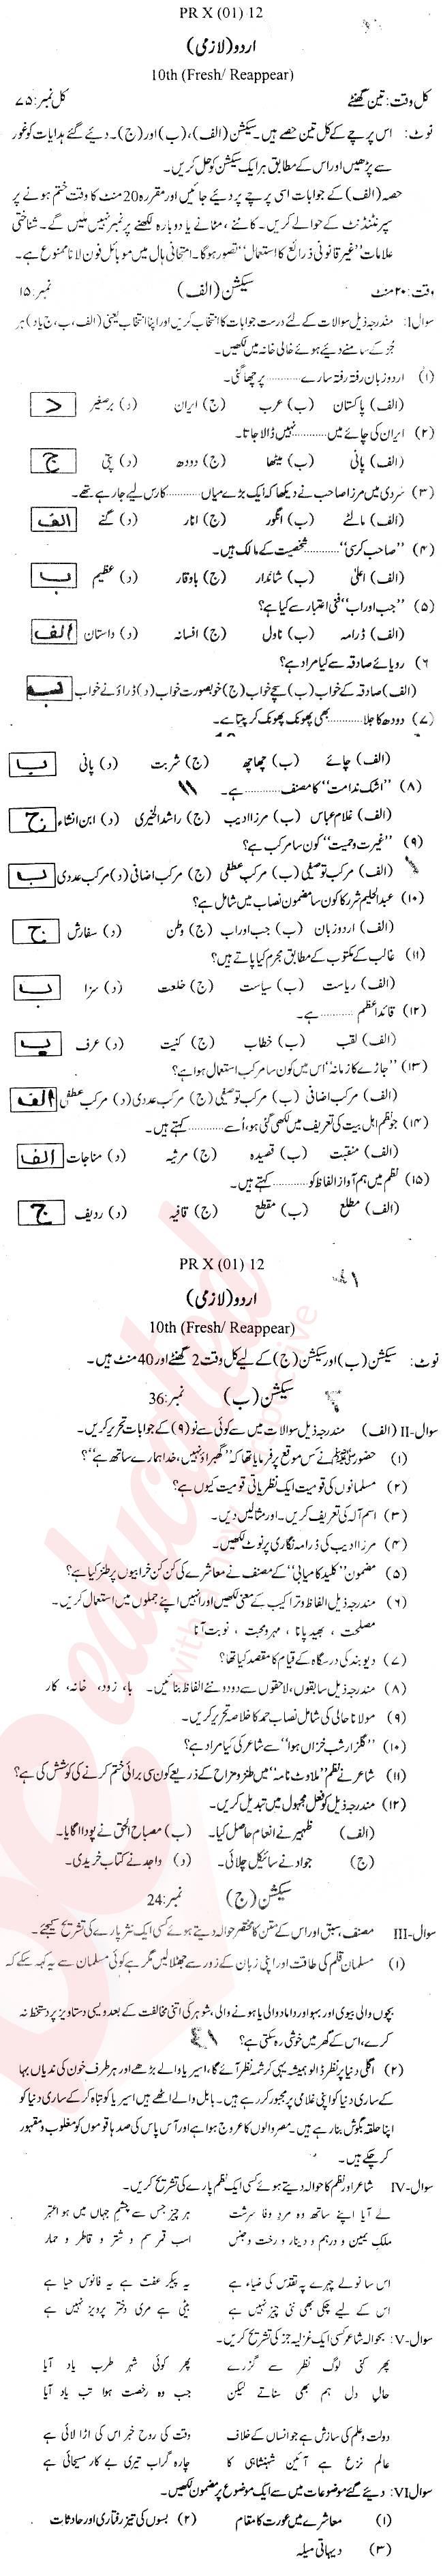 Urdu 10th Urdu Medium Past Paper Group 1 BISE Swat 2012